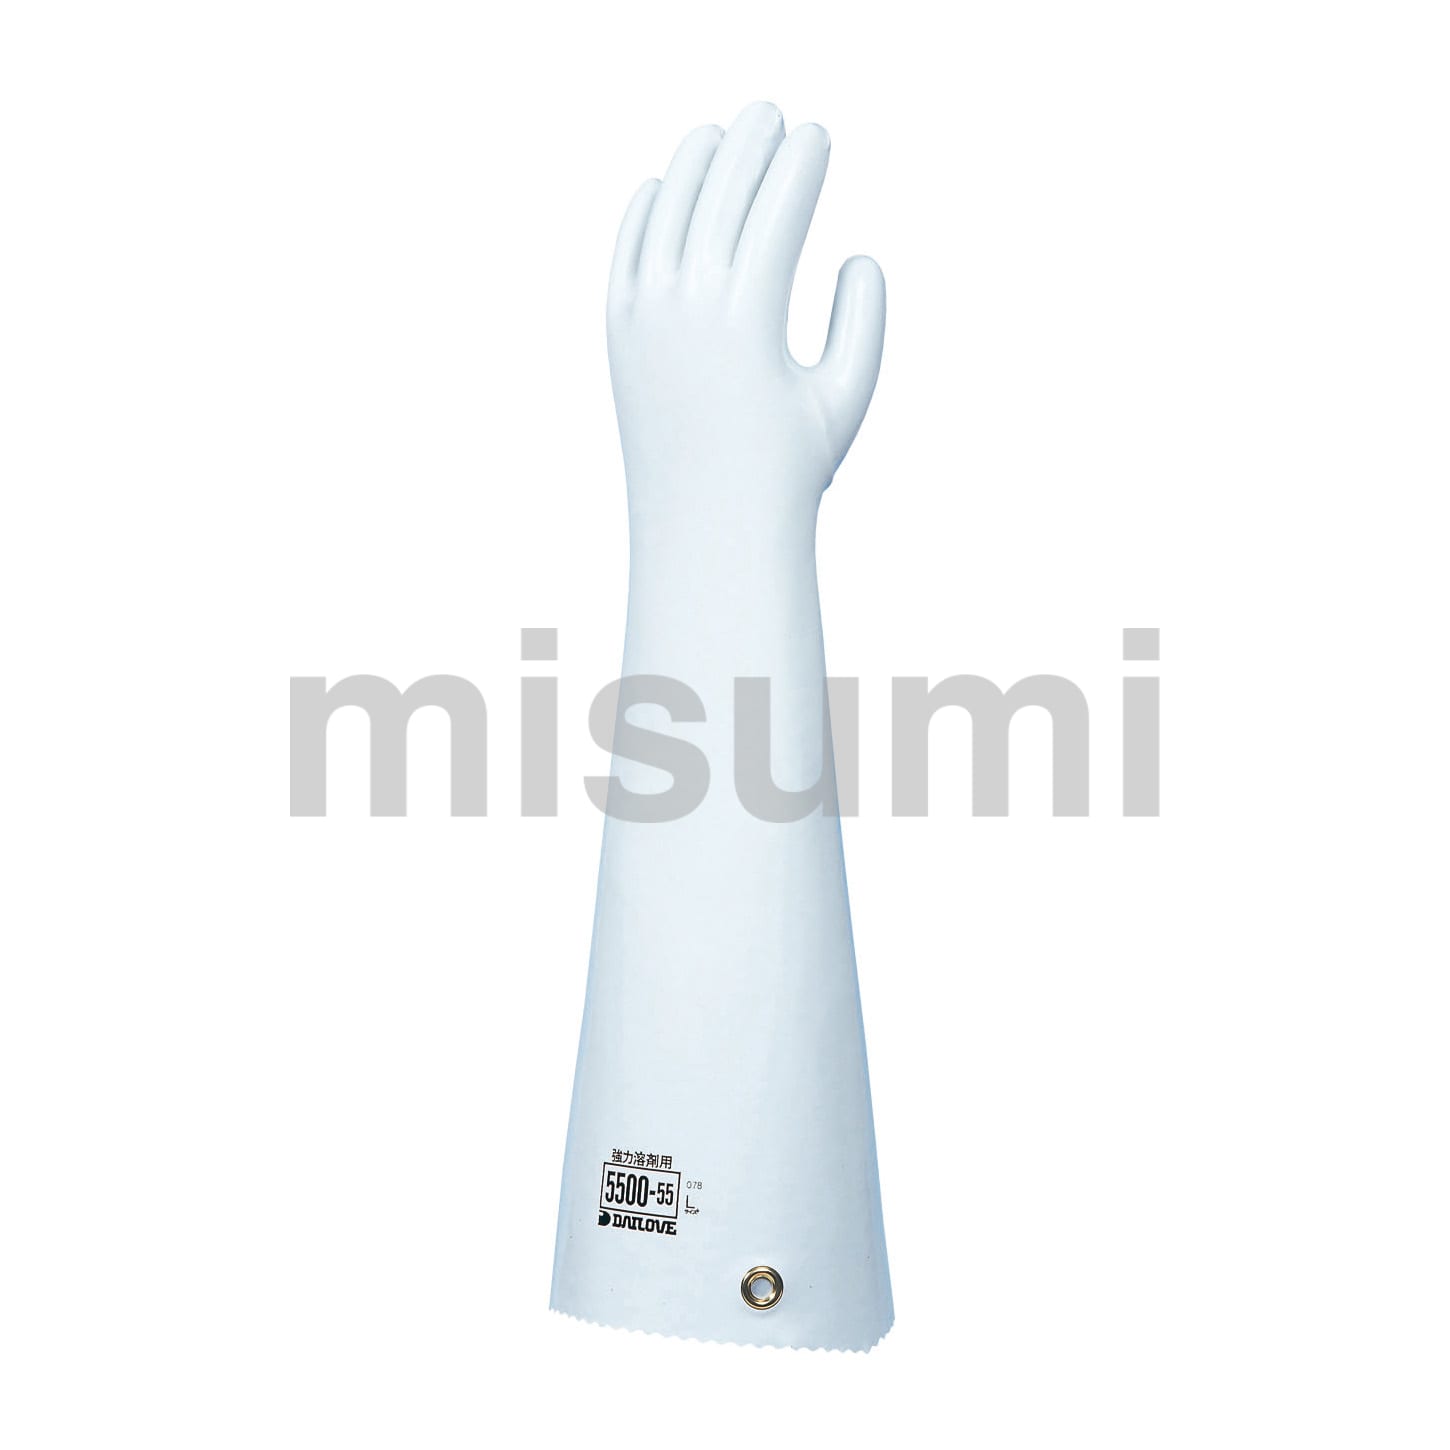 化学防護手袋（ブチルゴム）【アンセル】 アンセル MISUMI(ミスミ)